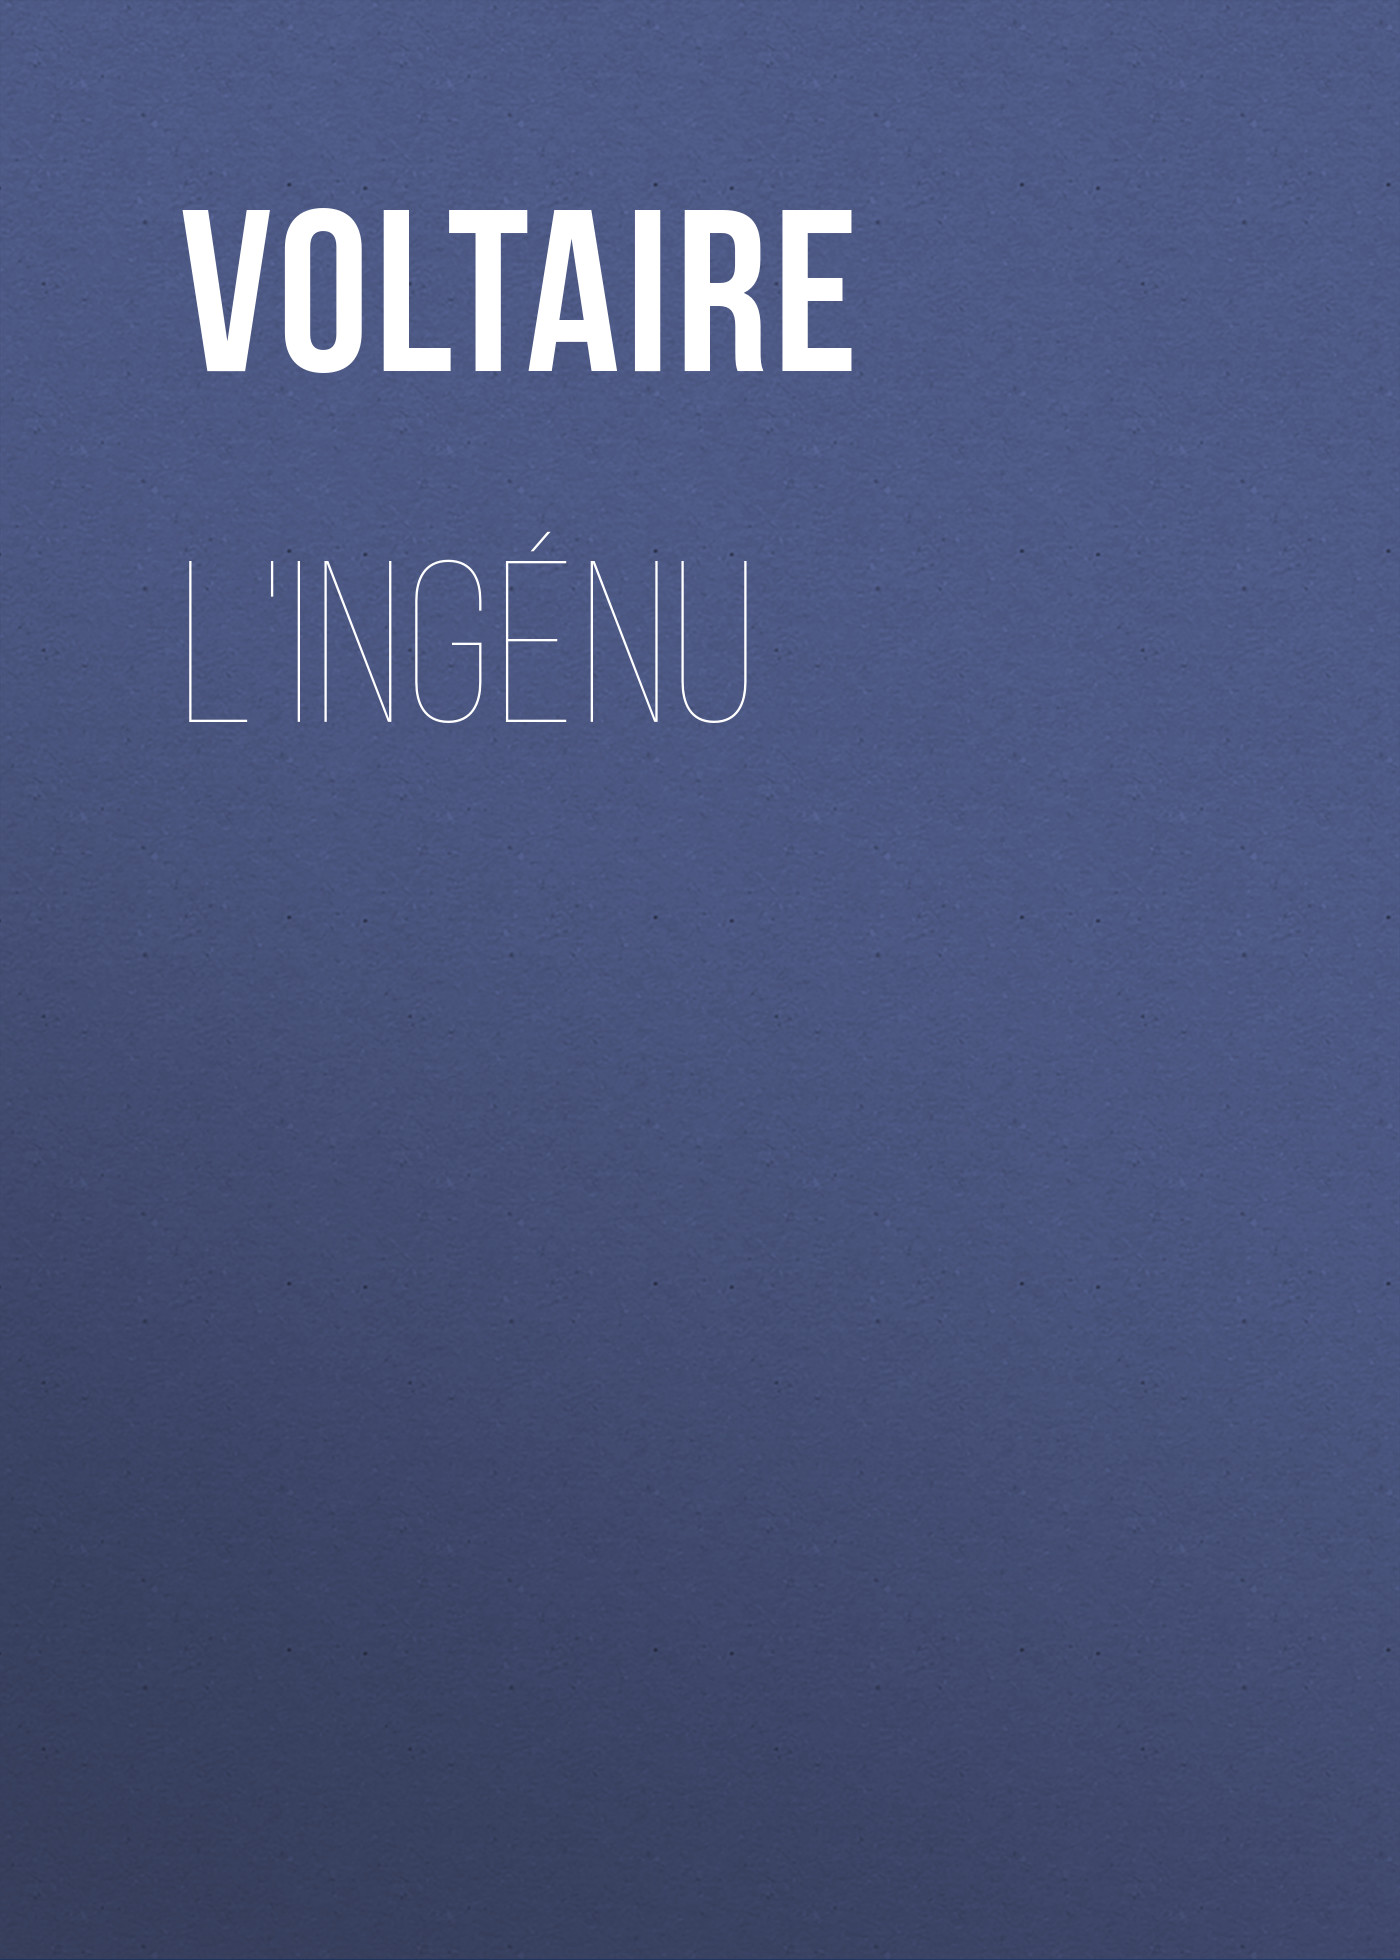 Книга L'Ingénu из серии , созданная  Voltaire, может относится к жанру Литература 18 века, Зарубежная классика. Стоимость электронной книги L'Ingénu с идентификатором 25560436 составляет 0 руб.